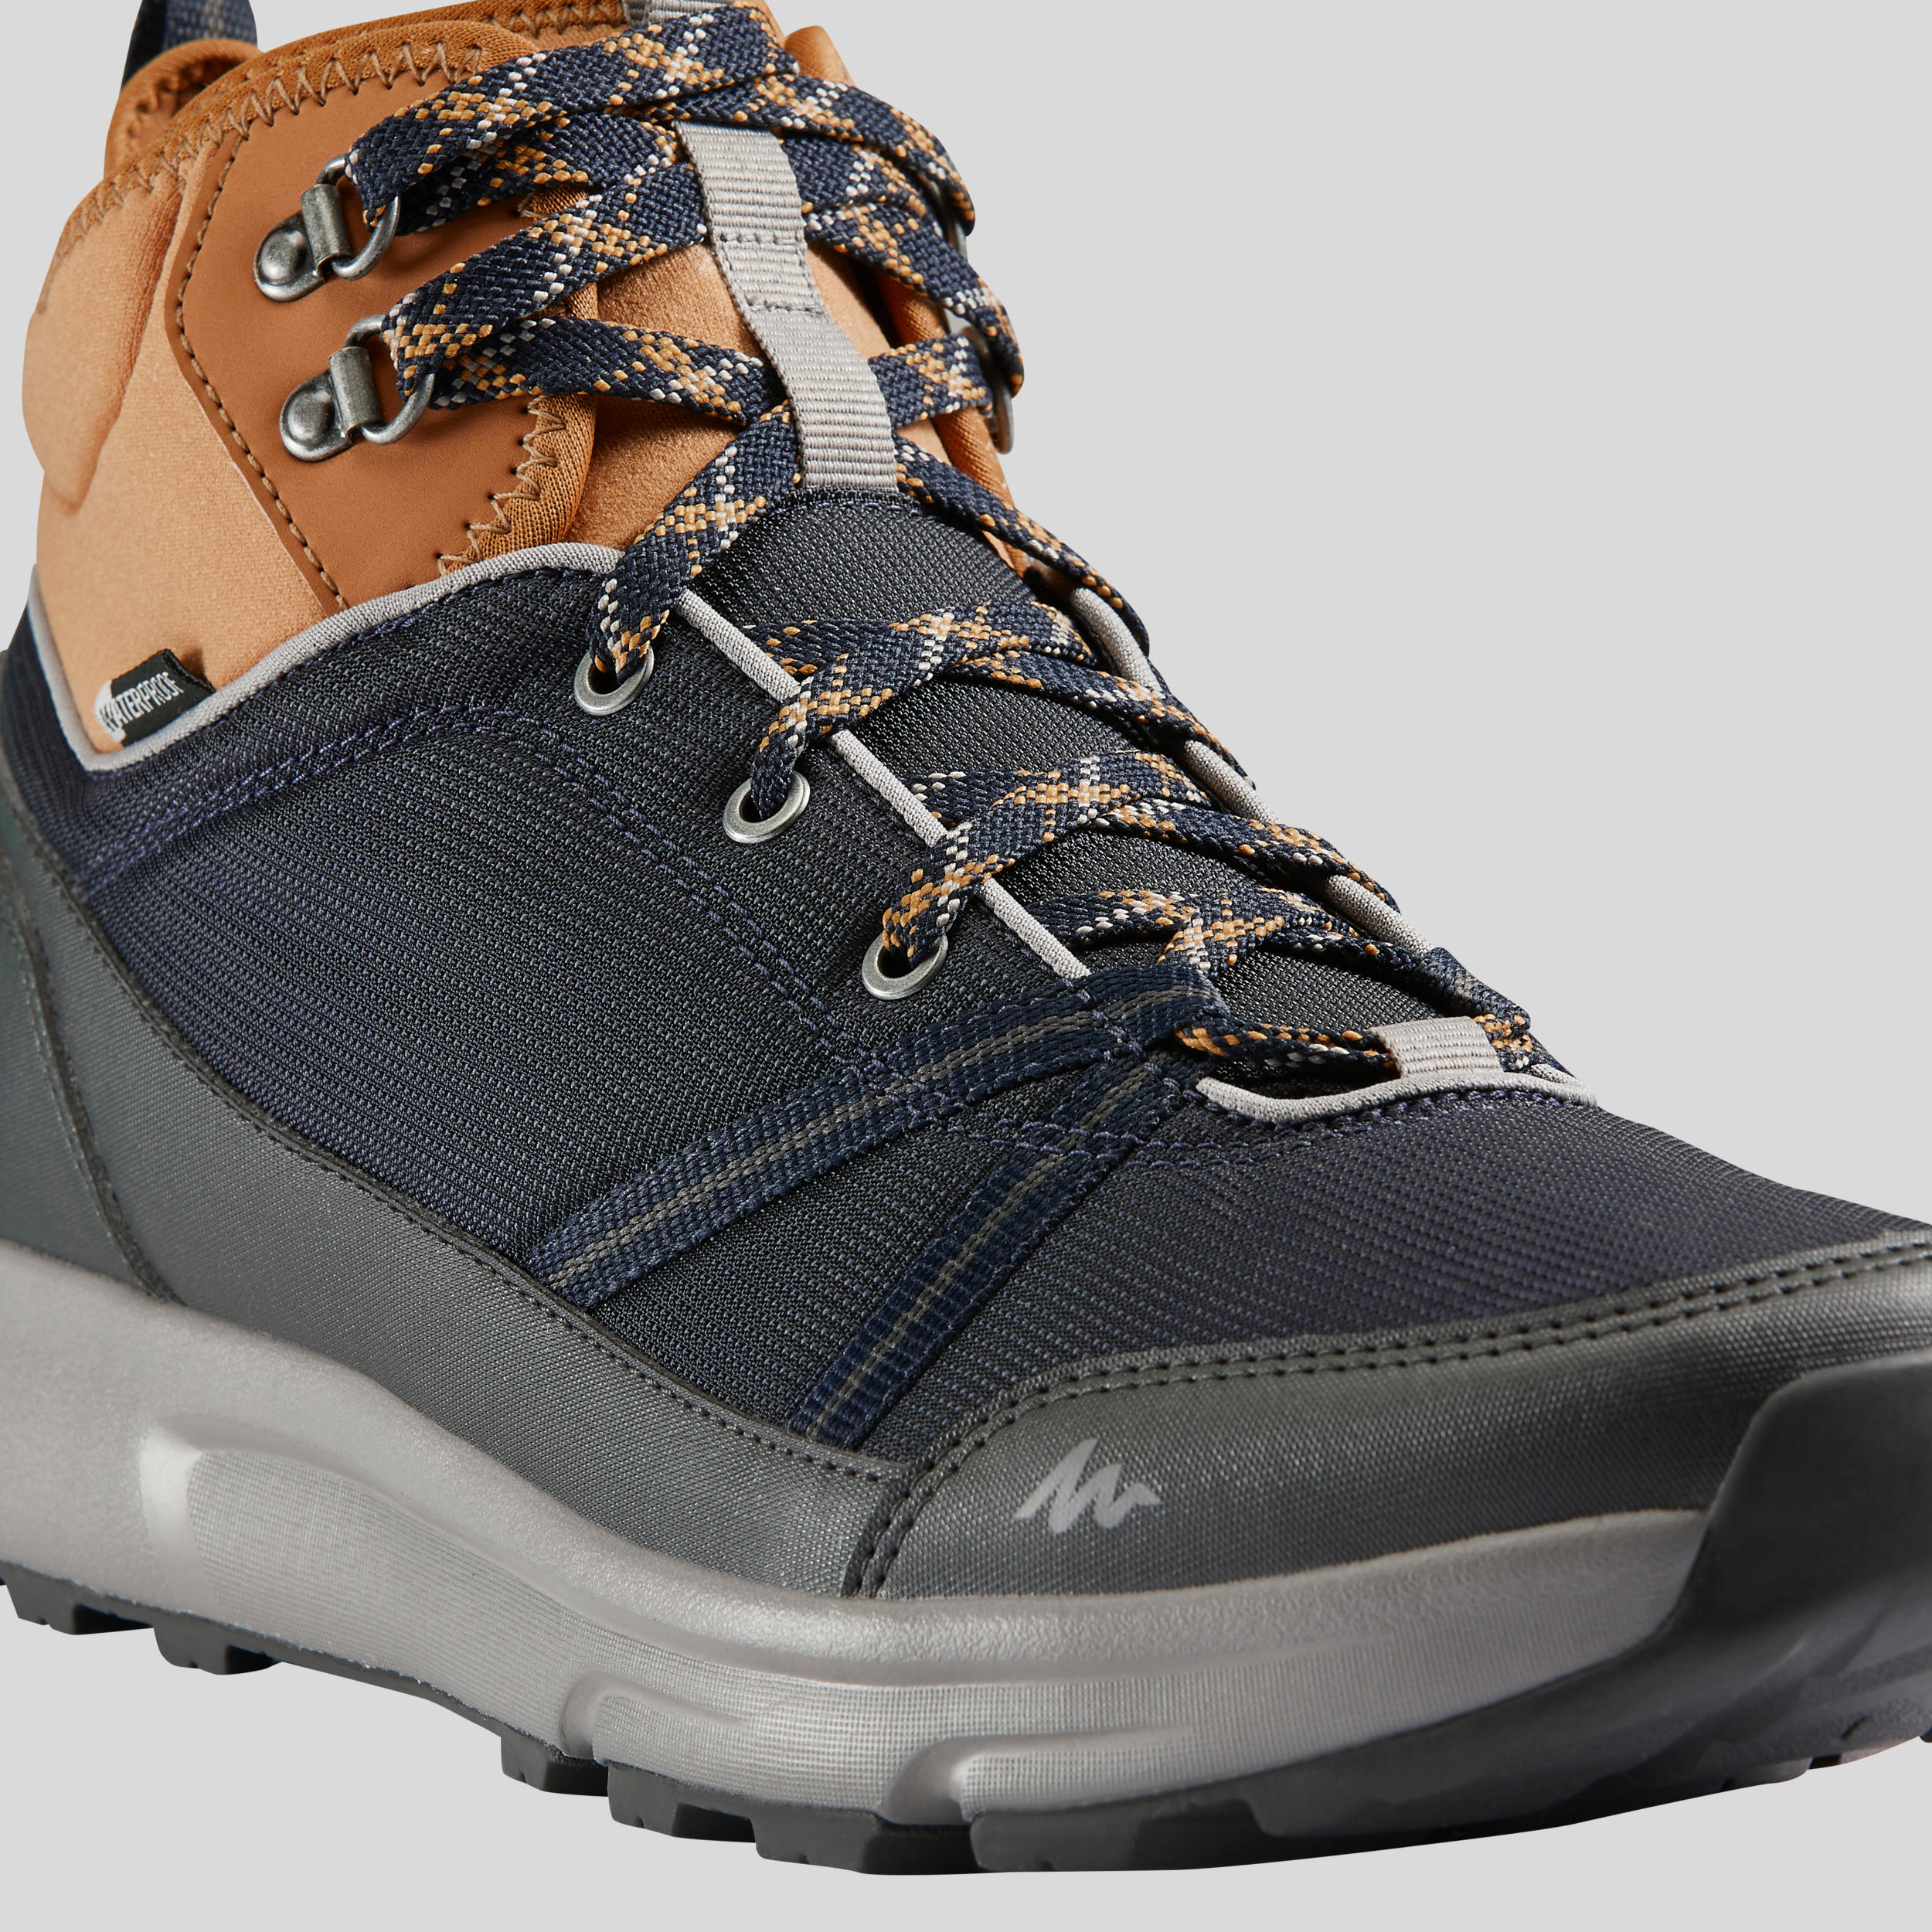 Men’s Waterproof Hiking Shoes - NH 100 - QUECHUA